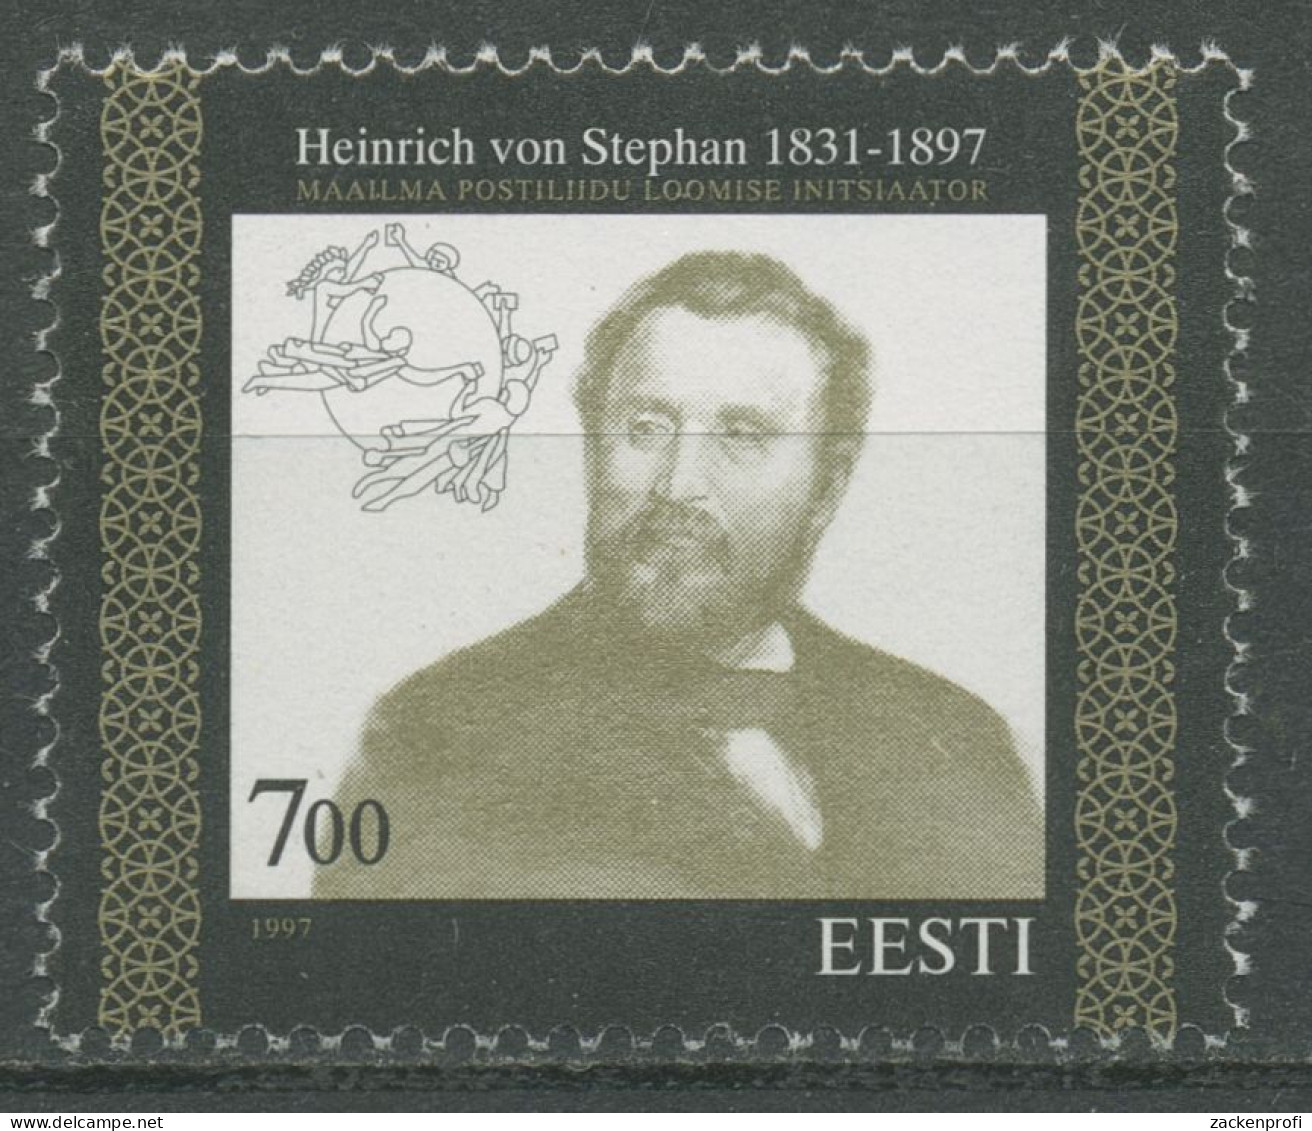 Estland 1997 Weltpostverein UPU Heinrich V. Stephan 300 Postfrisch - Estonia